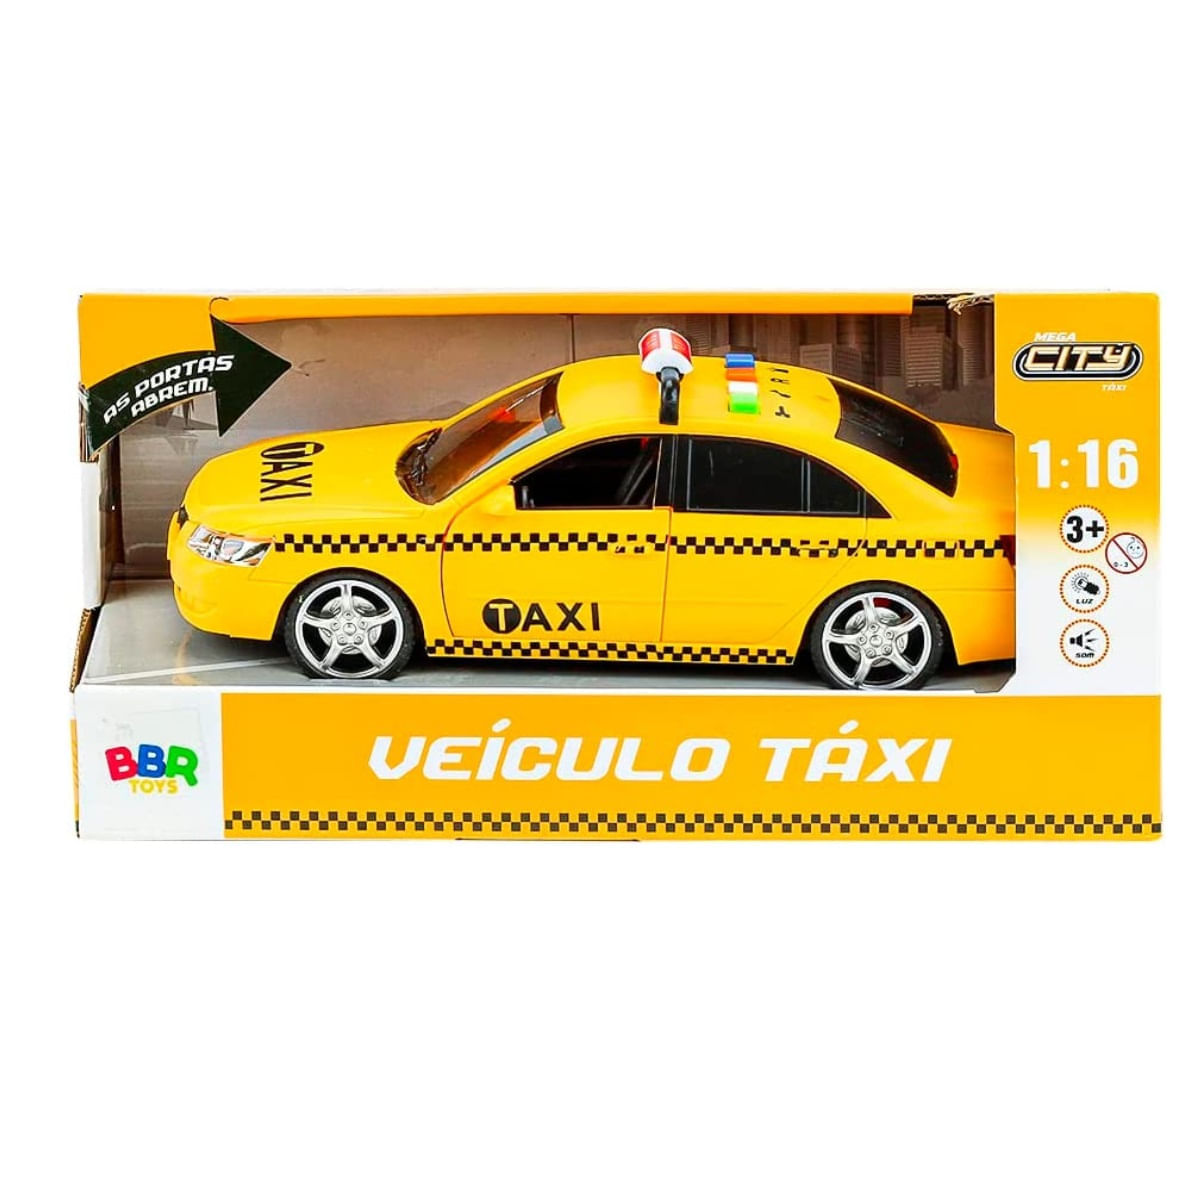 Carrinho Táxi Com Luz E Som Bbr R3250